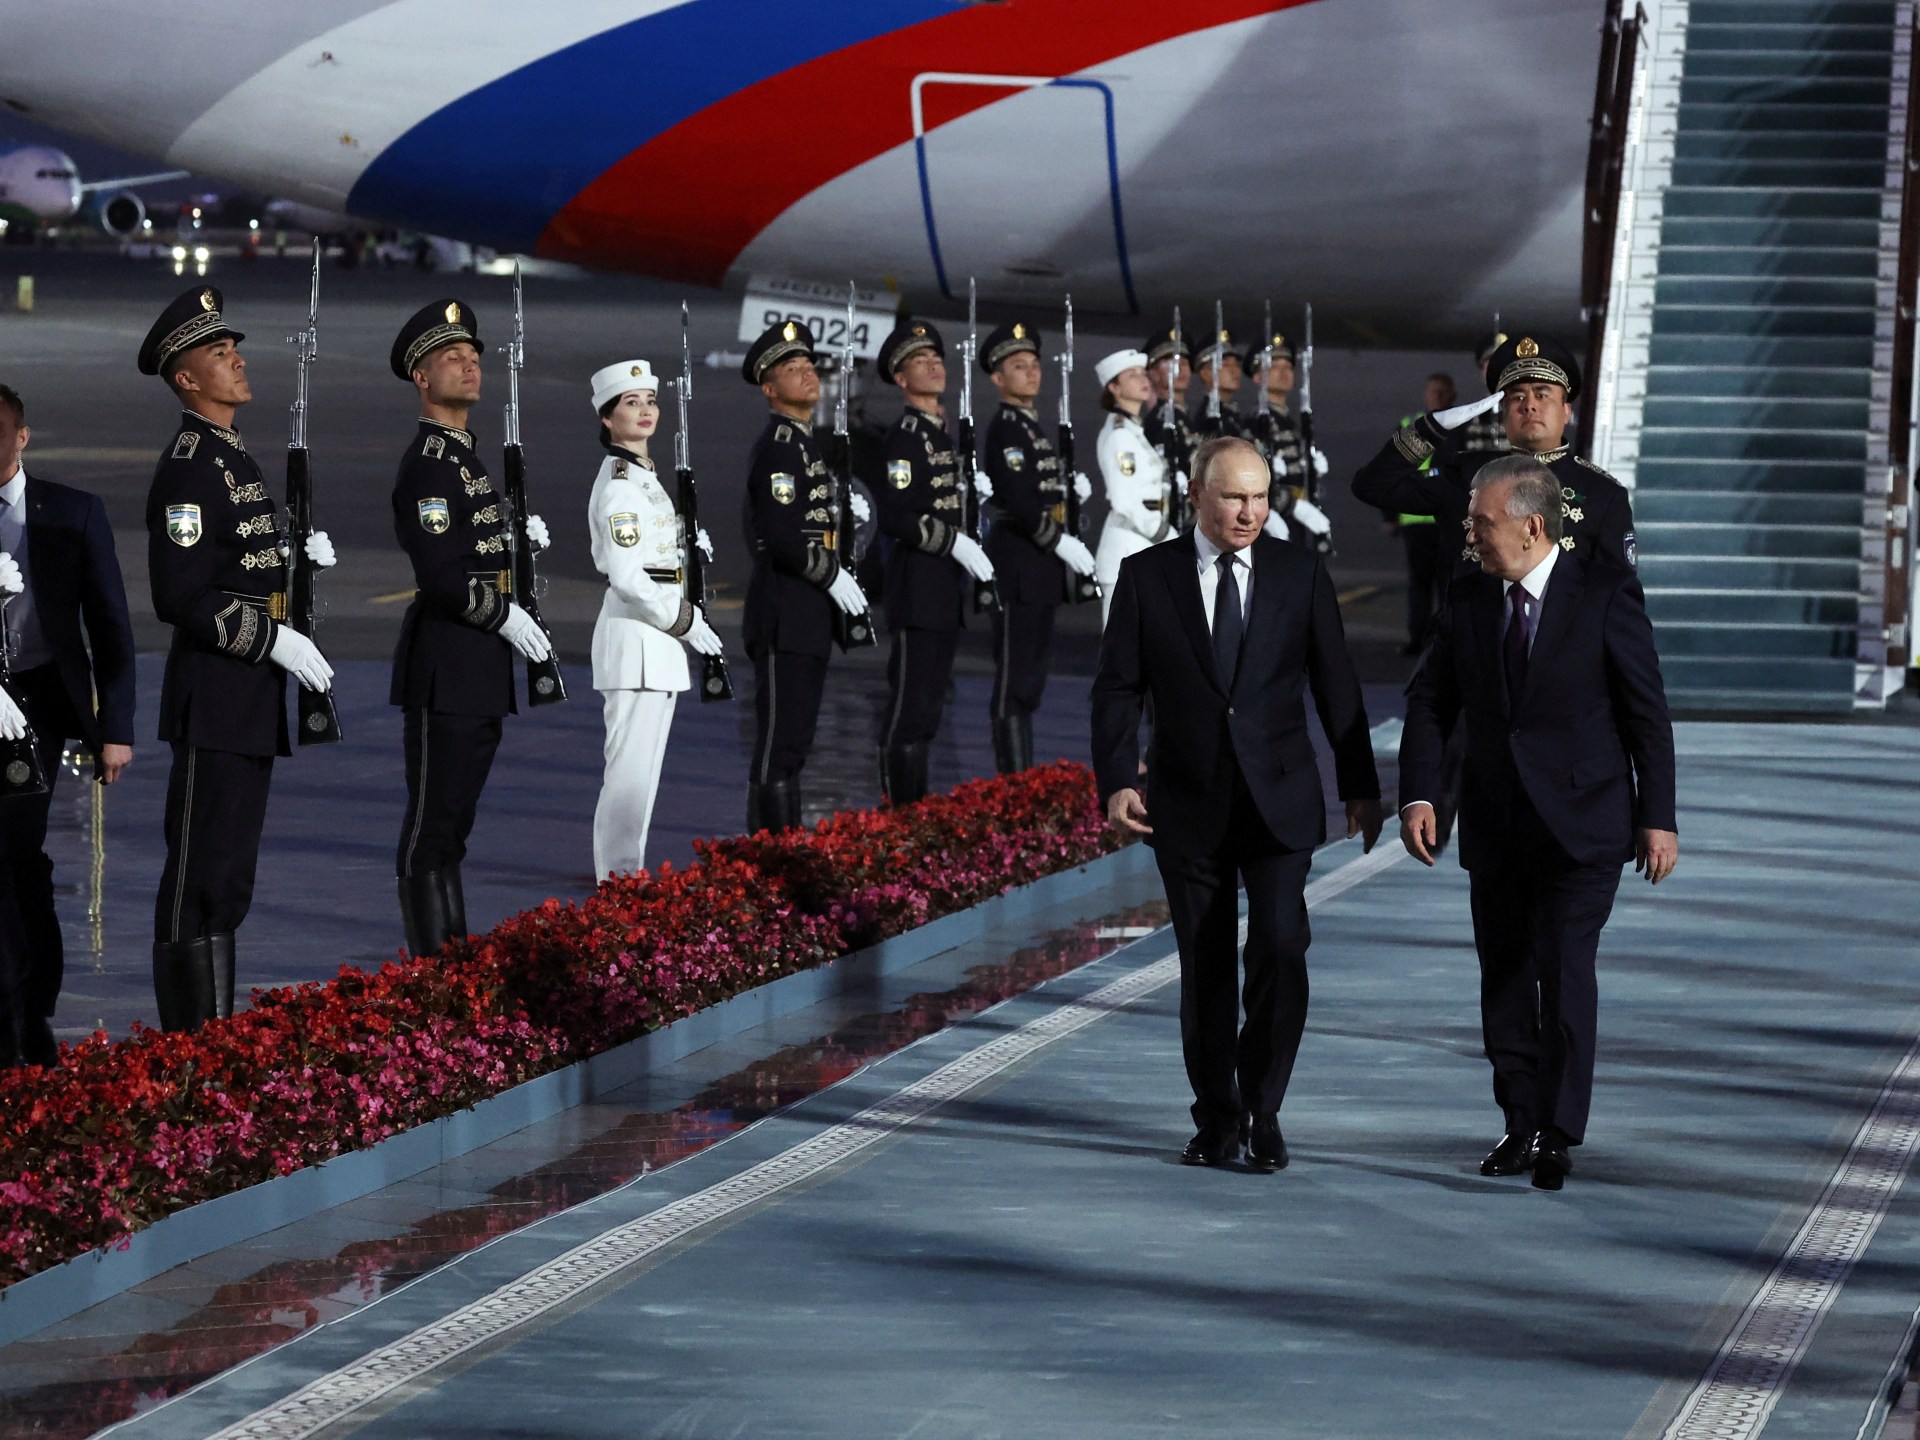 بوتين يصل إلى أوزبكستان في ثالث زيارة رسمية له منذ انتخابه | أخبار – البوكس نيوز